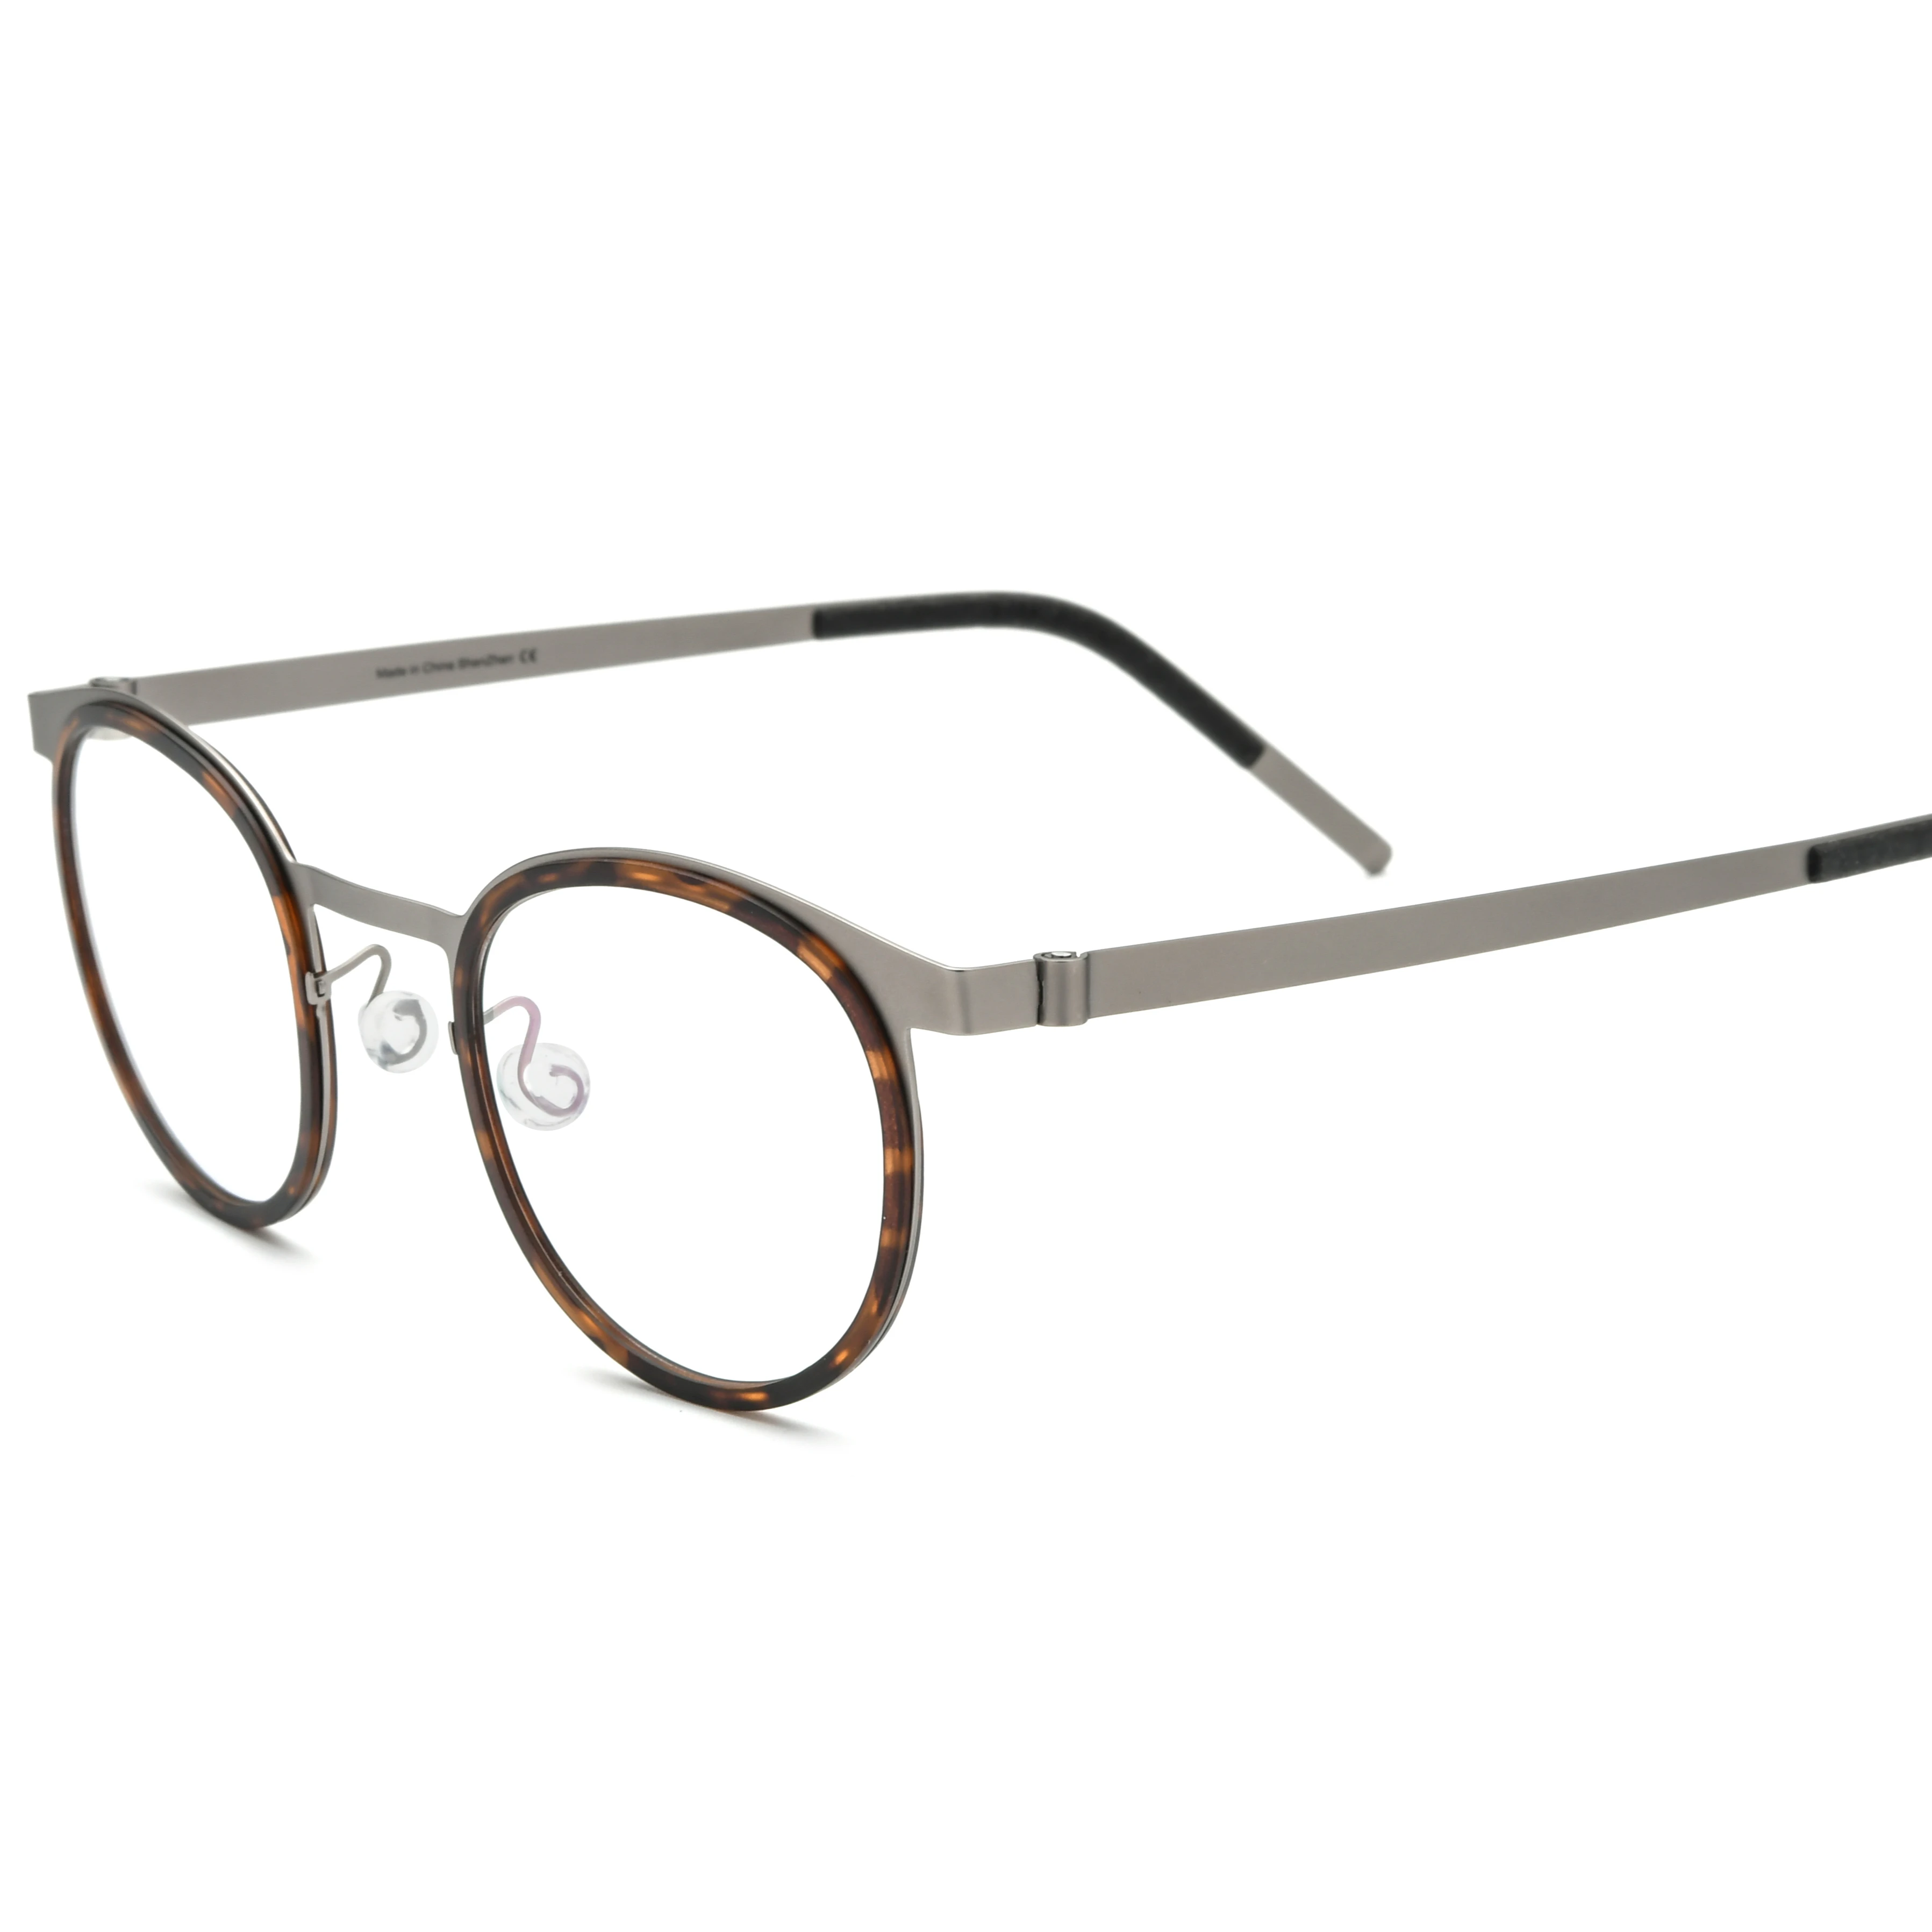 Titanium Glasses Frame Men Women Round Myopia Optical Prescription Eyeglasses Screwless Korea Eyewear (1600553588057)